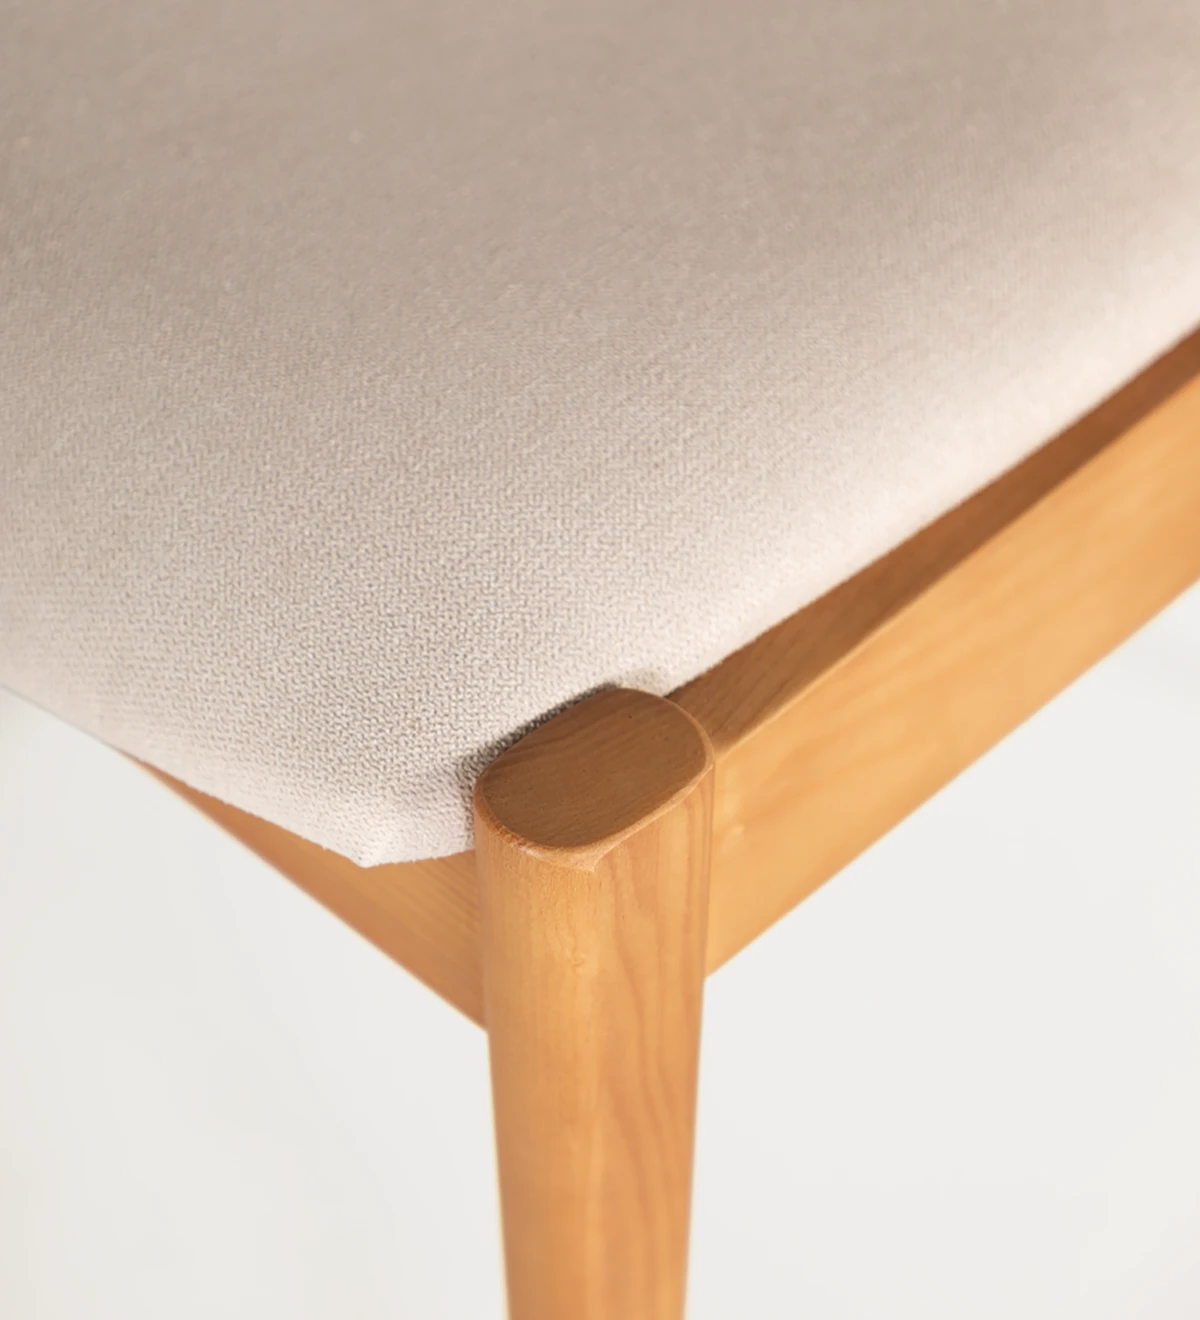 Silla en madera de fresno color miel, con asiento y respaldo tapizado en tejido.